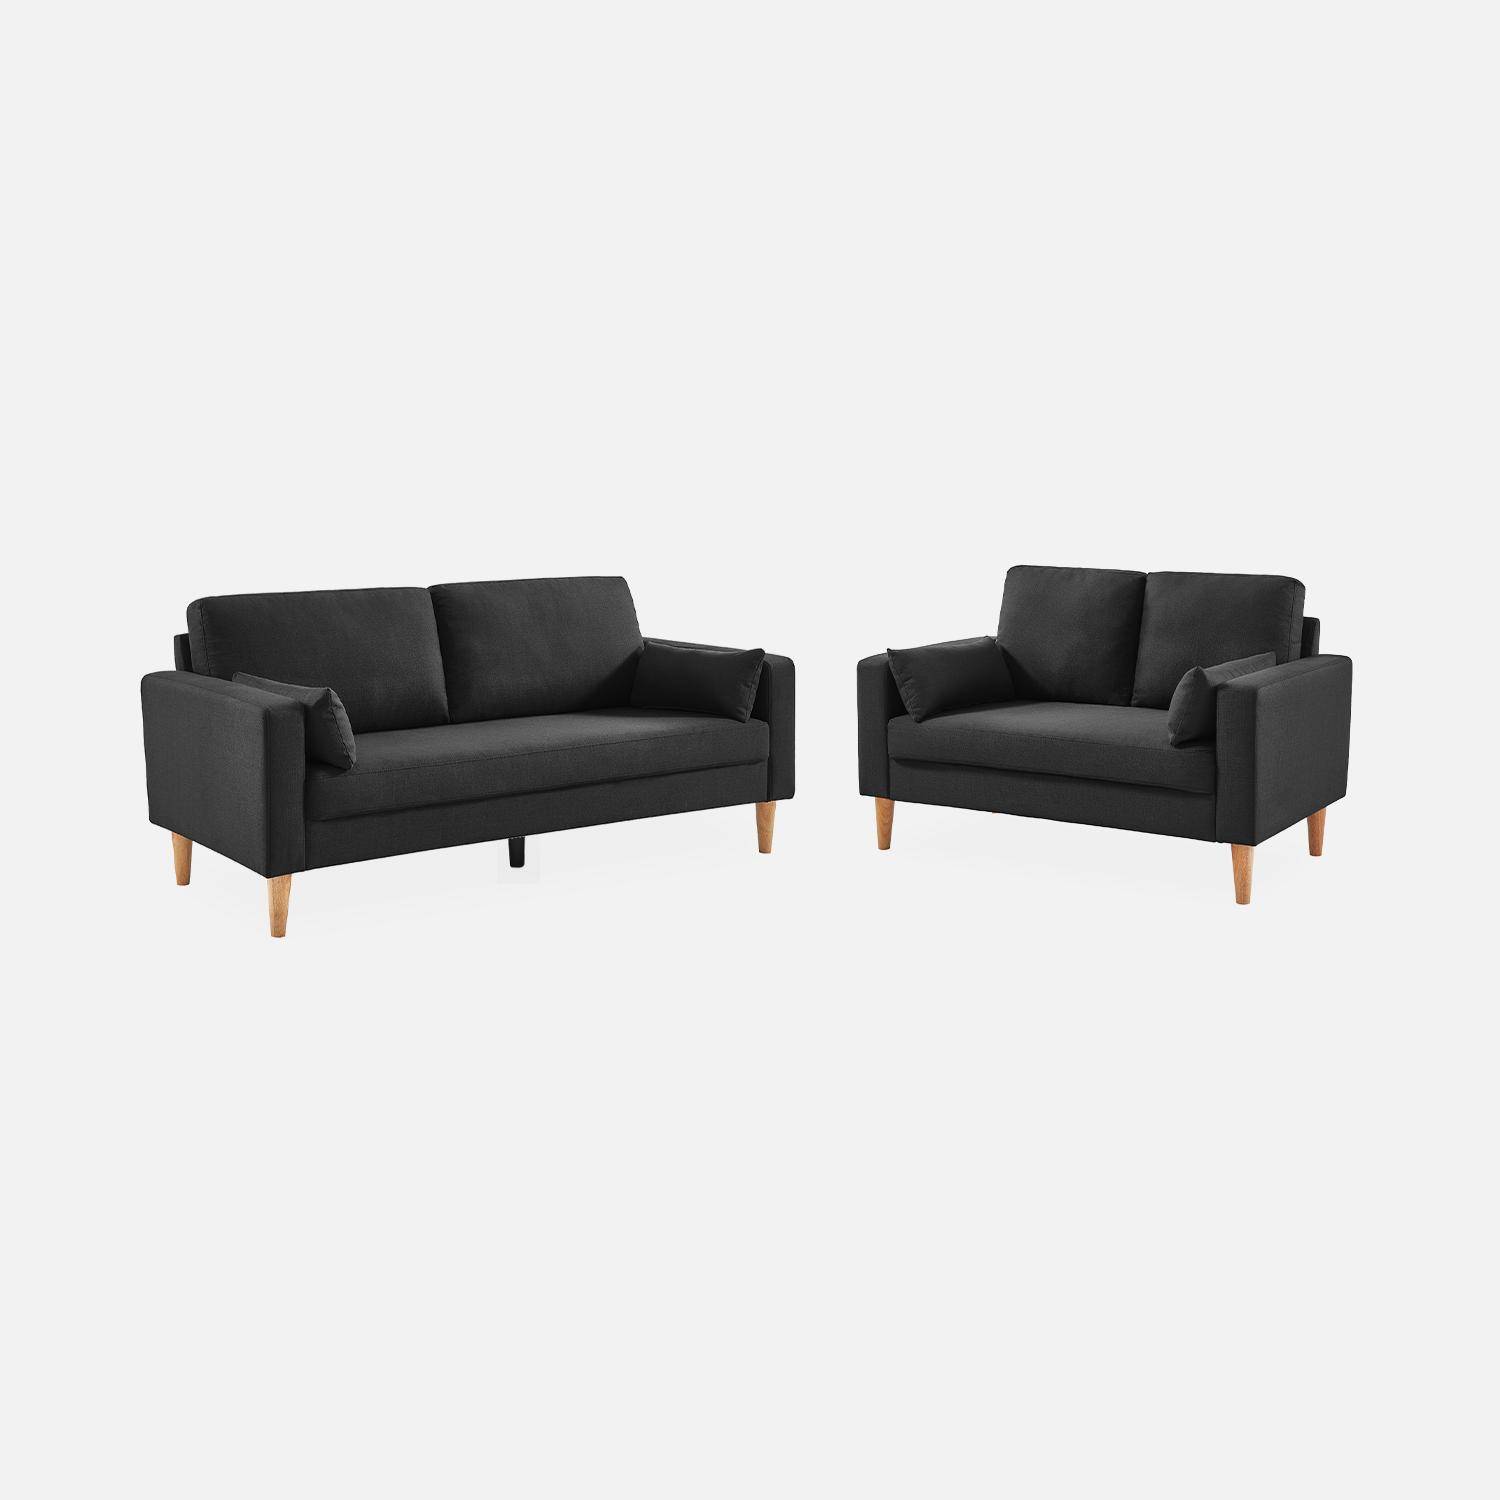 Donkergrijze stoffen driezits sofa - Bjorn - 3-zits bank met houten poten, scandinavische stijl  ,sweeek,Photo5